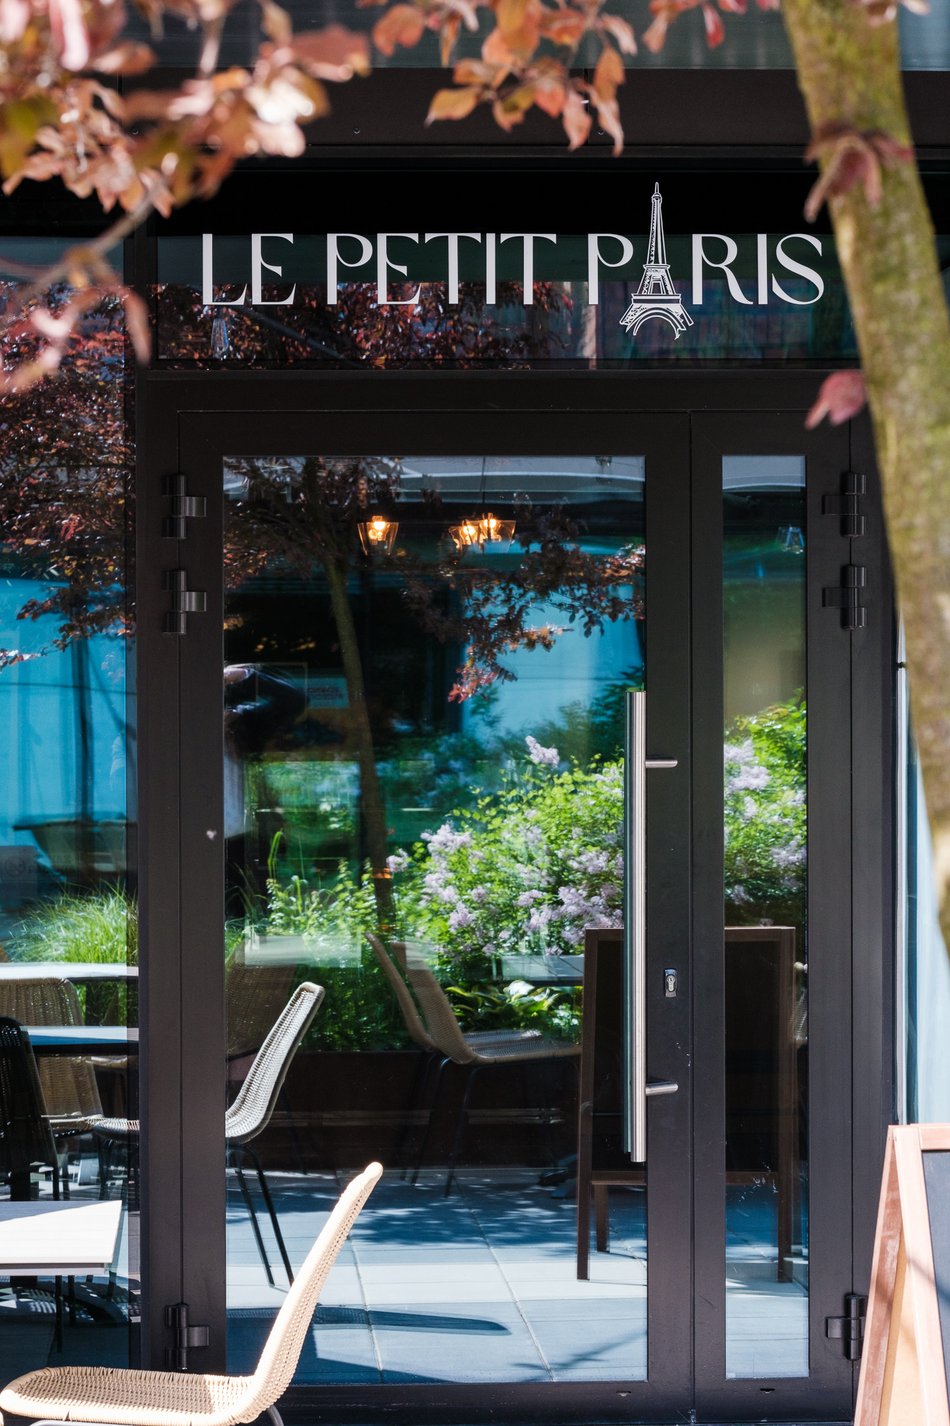 Le Petit Paris - restauracja w Monopolis w Łodzi